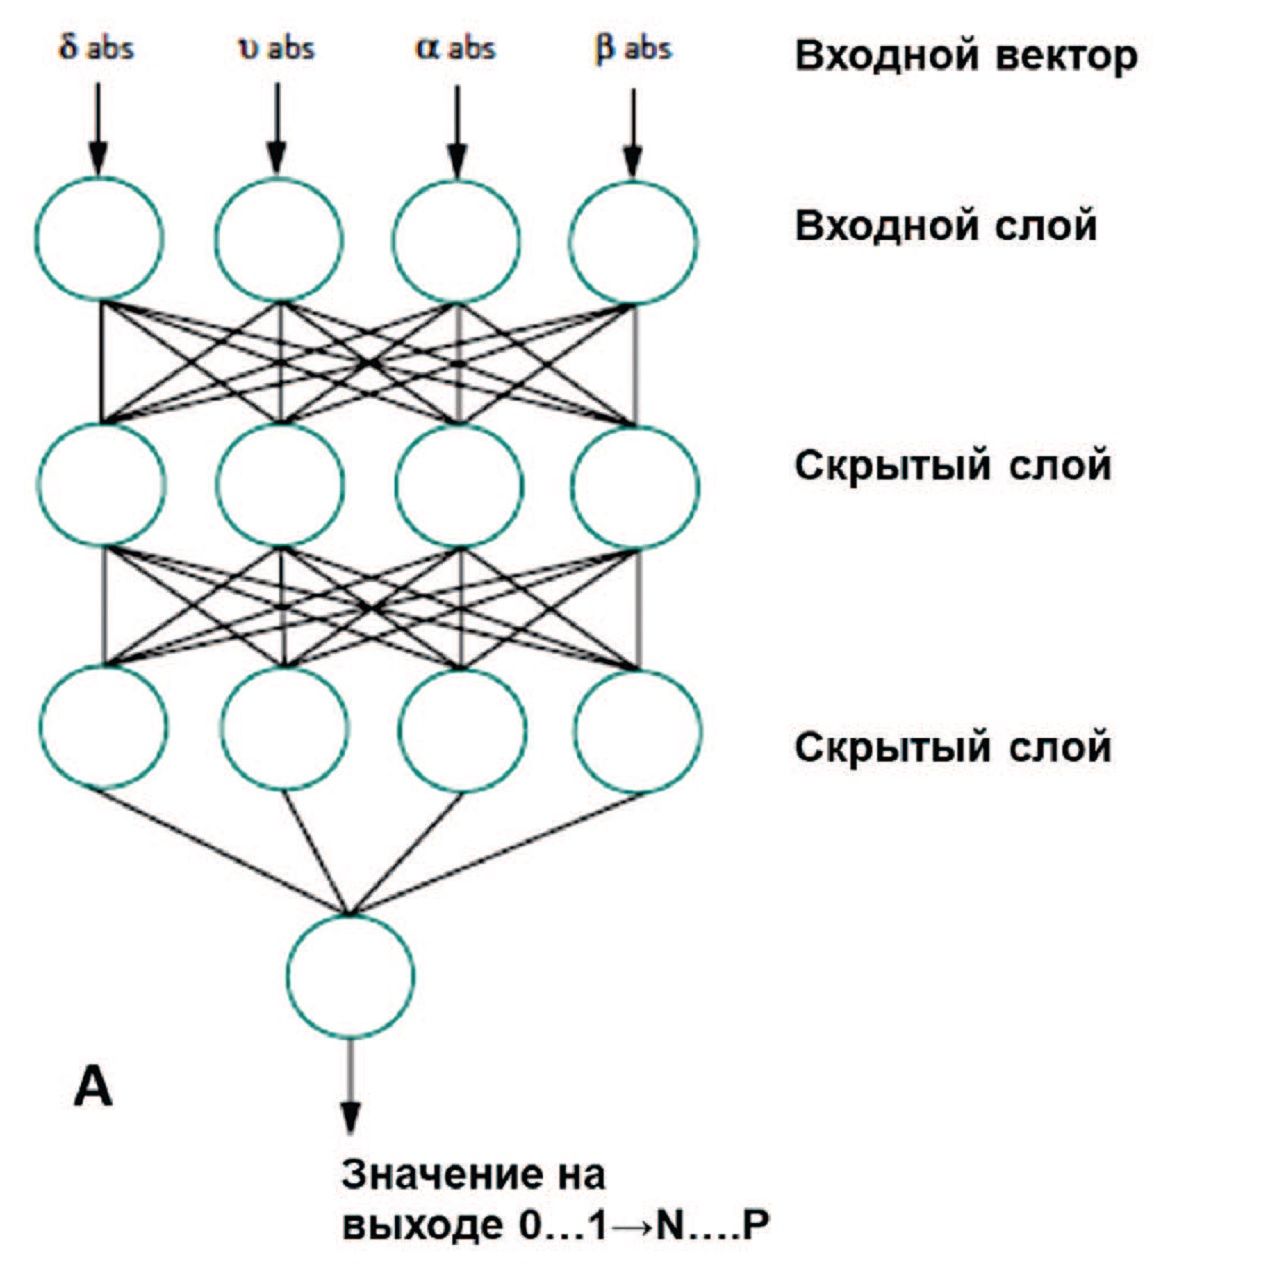 Архитектура нейронной сети, использованная для классификации МКБ